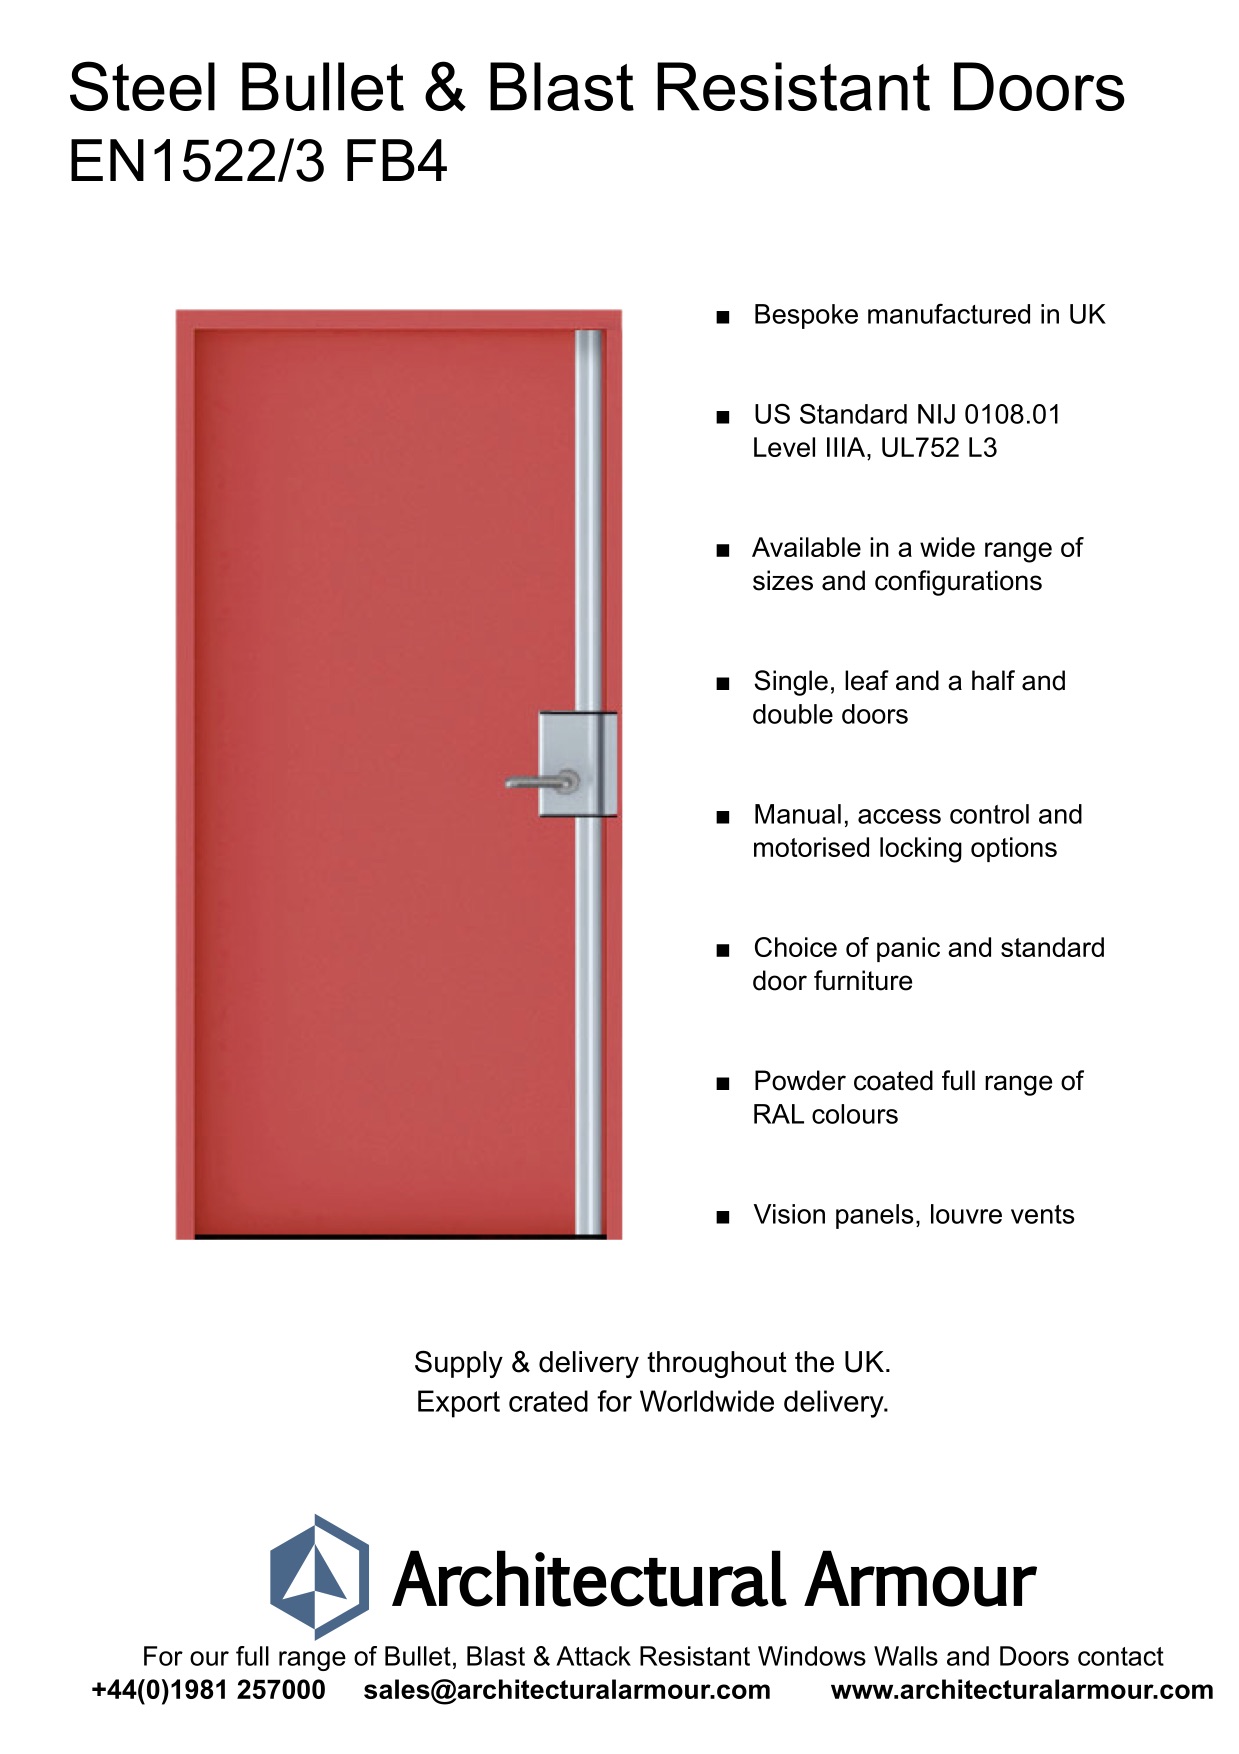 Blast-and-Bullet-Resistant-Steel-Door-UK-EN1522-3-FB4